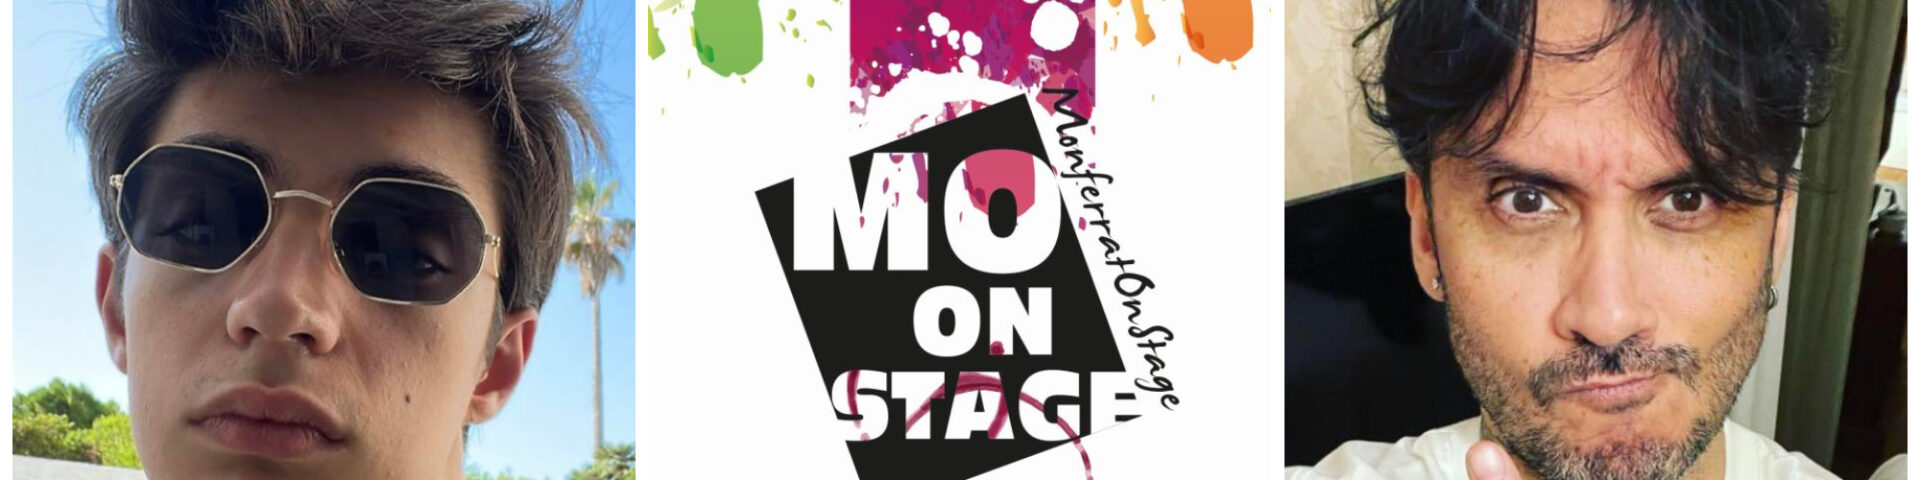 Monferrato On Stage: da Fabrizio Moro a Matteo Romano, tutti i protagonisti